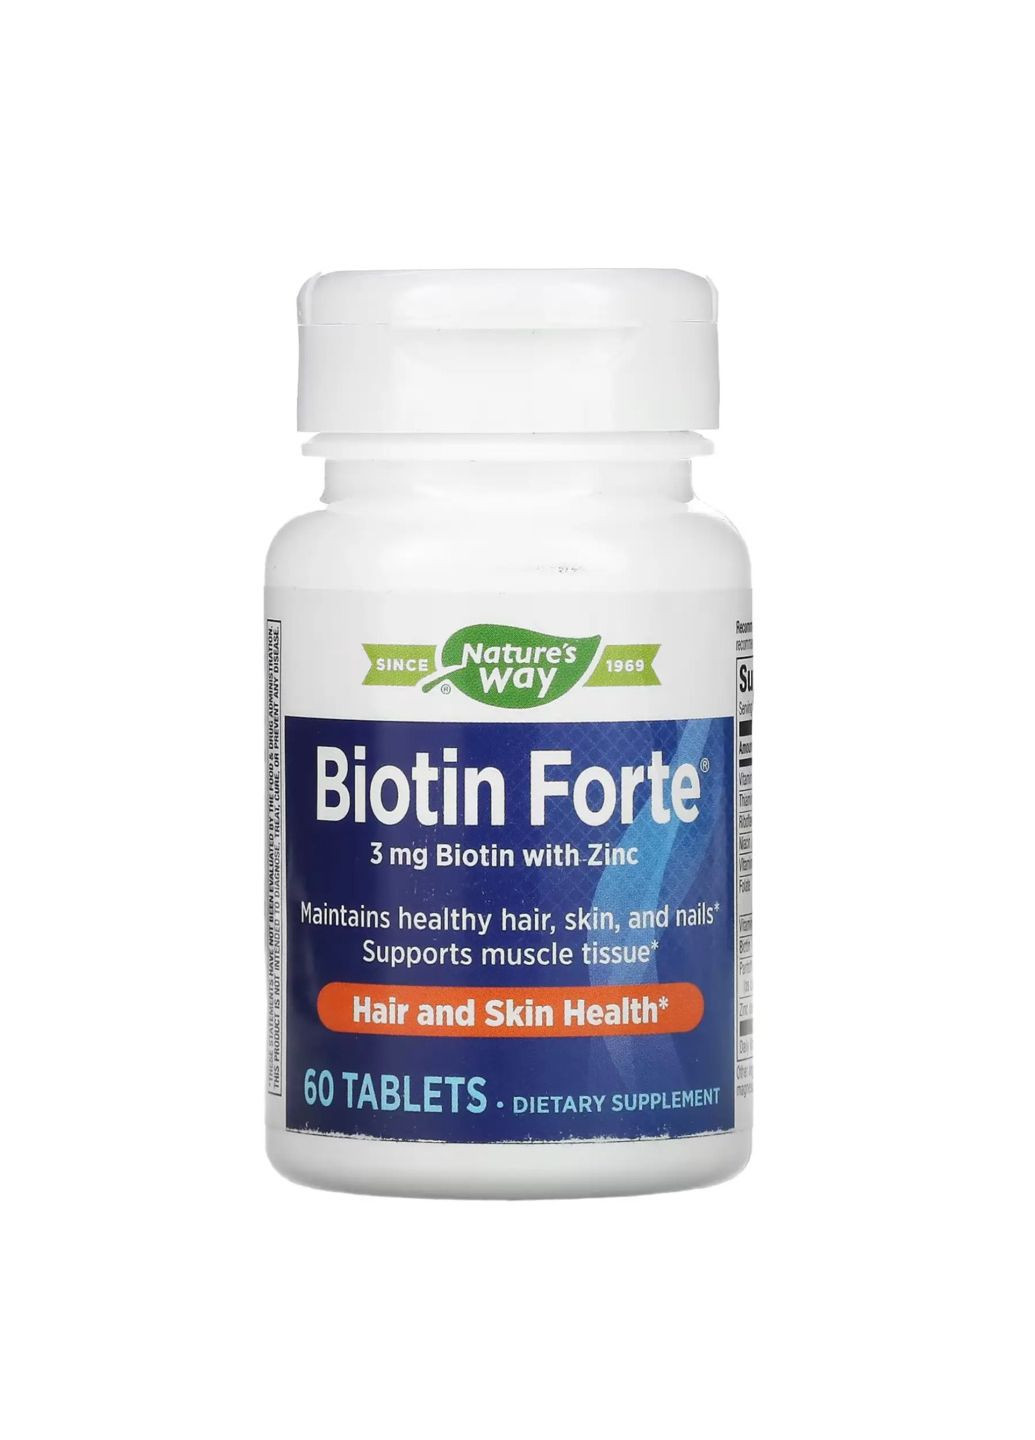 Biotin Forte 3 mg - 60 tabs добавка для здоров'я волосся, шкіри та нігтів Nature's Way (284171983)